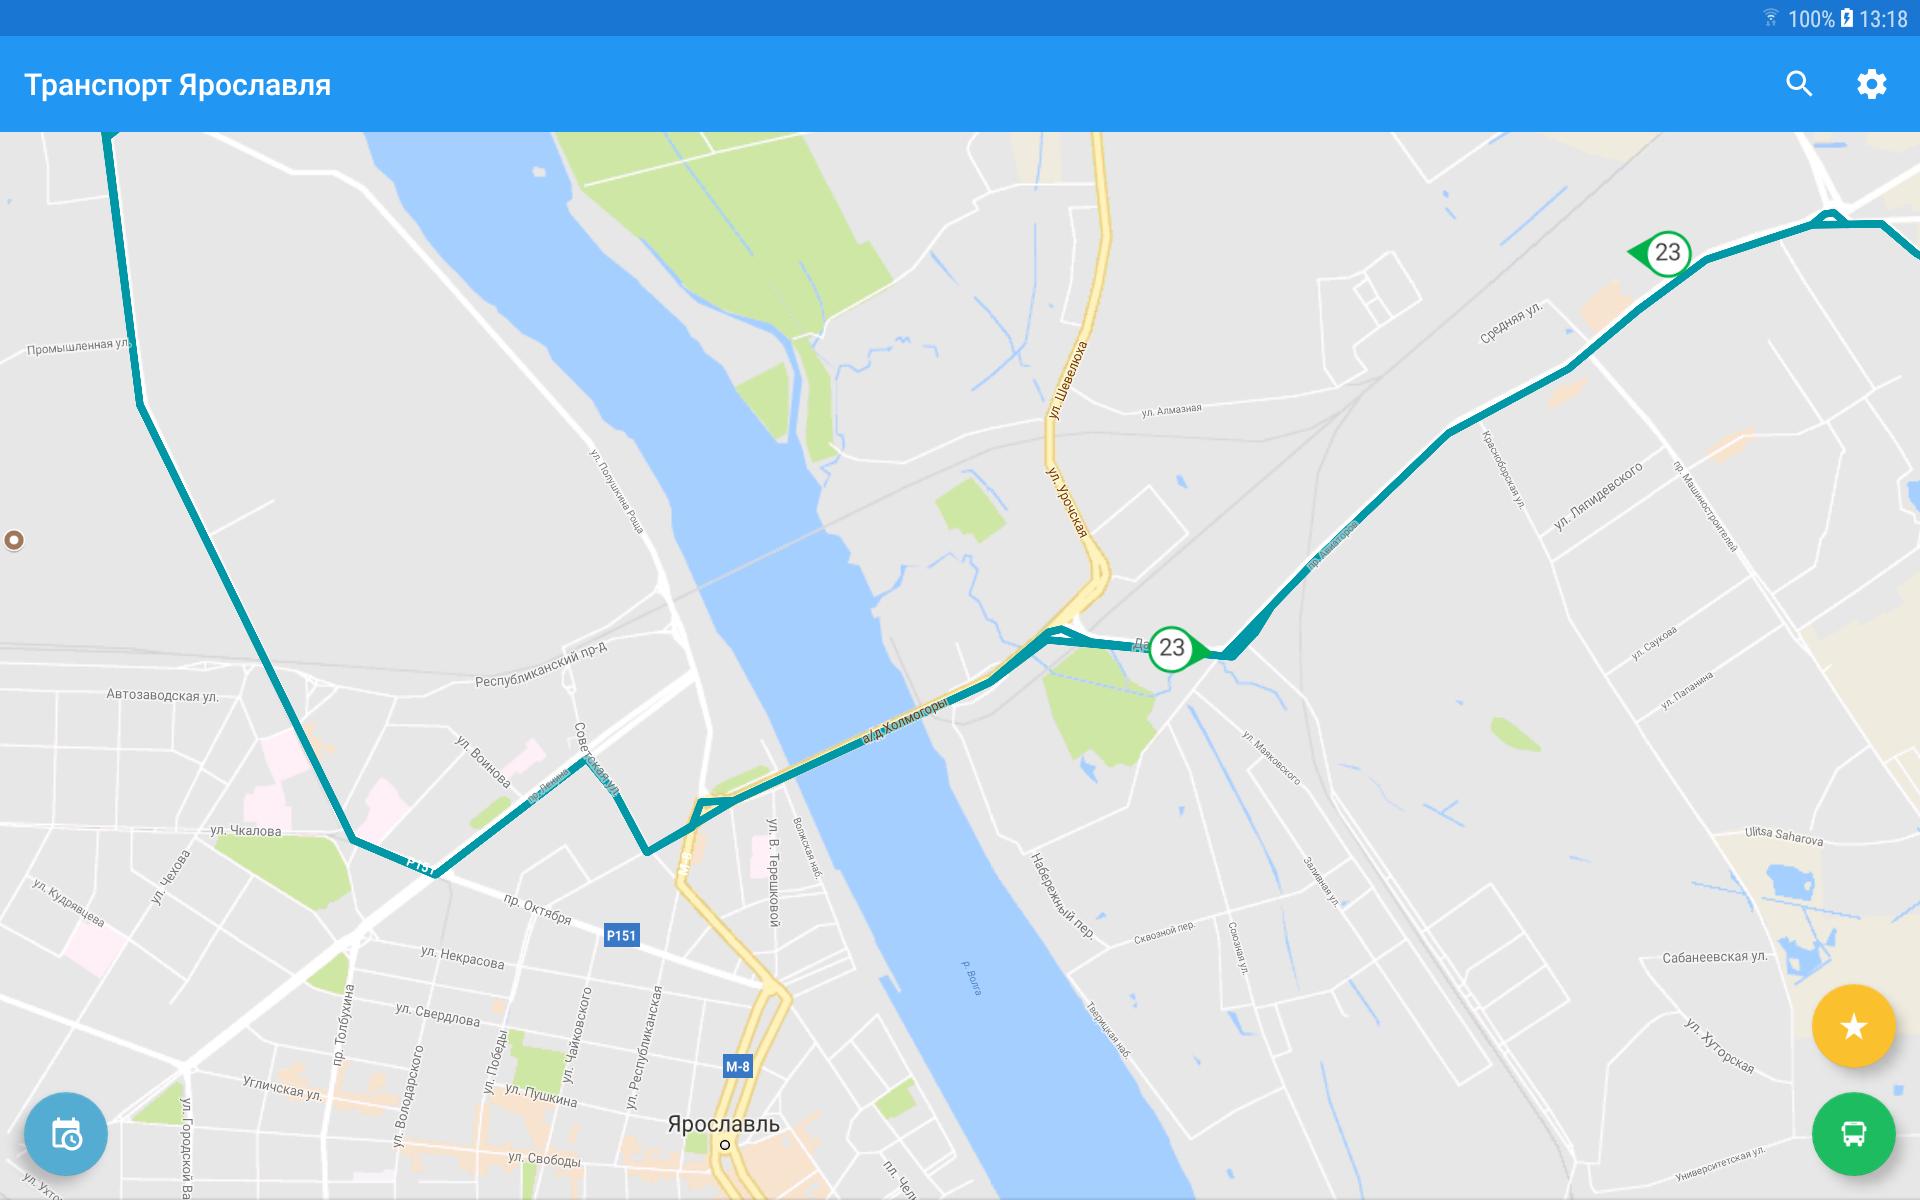 Местоположение транспорта в городе тамбове. Ot76 Ярославль. Транспорт Ярославля приложение. Карта общественного транспорта Ярославль. Трамвай Ярославль.